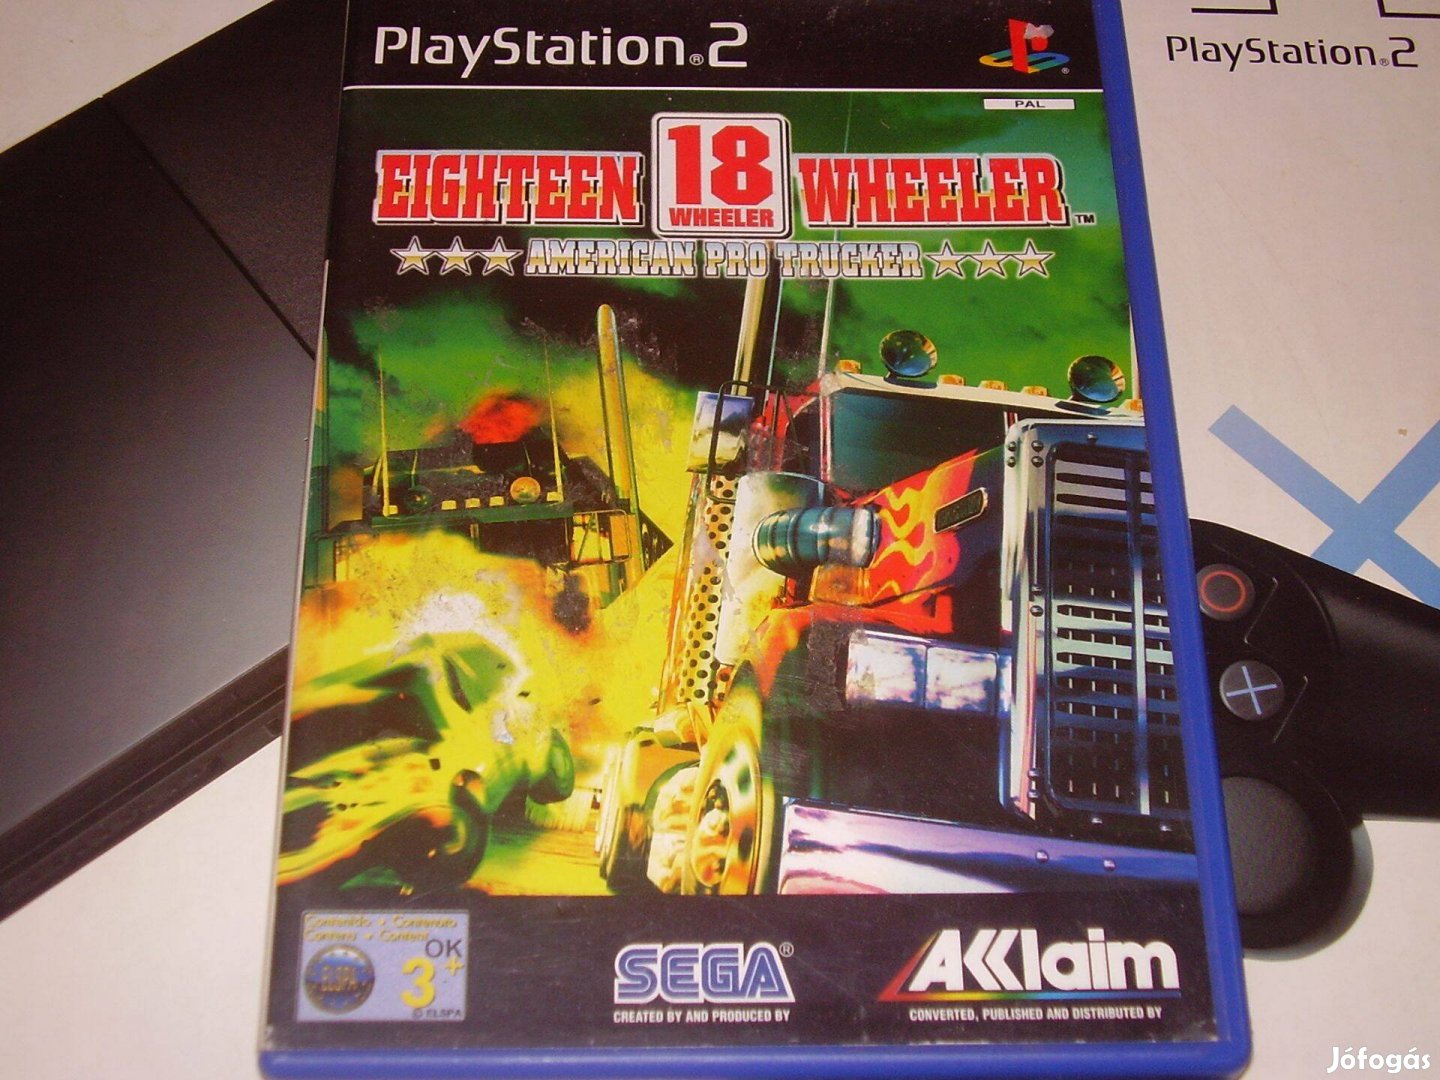 18 Wheeler Playstation 2 eredeti lemez eladó